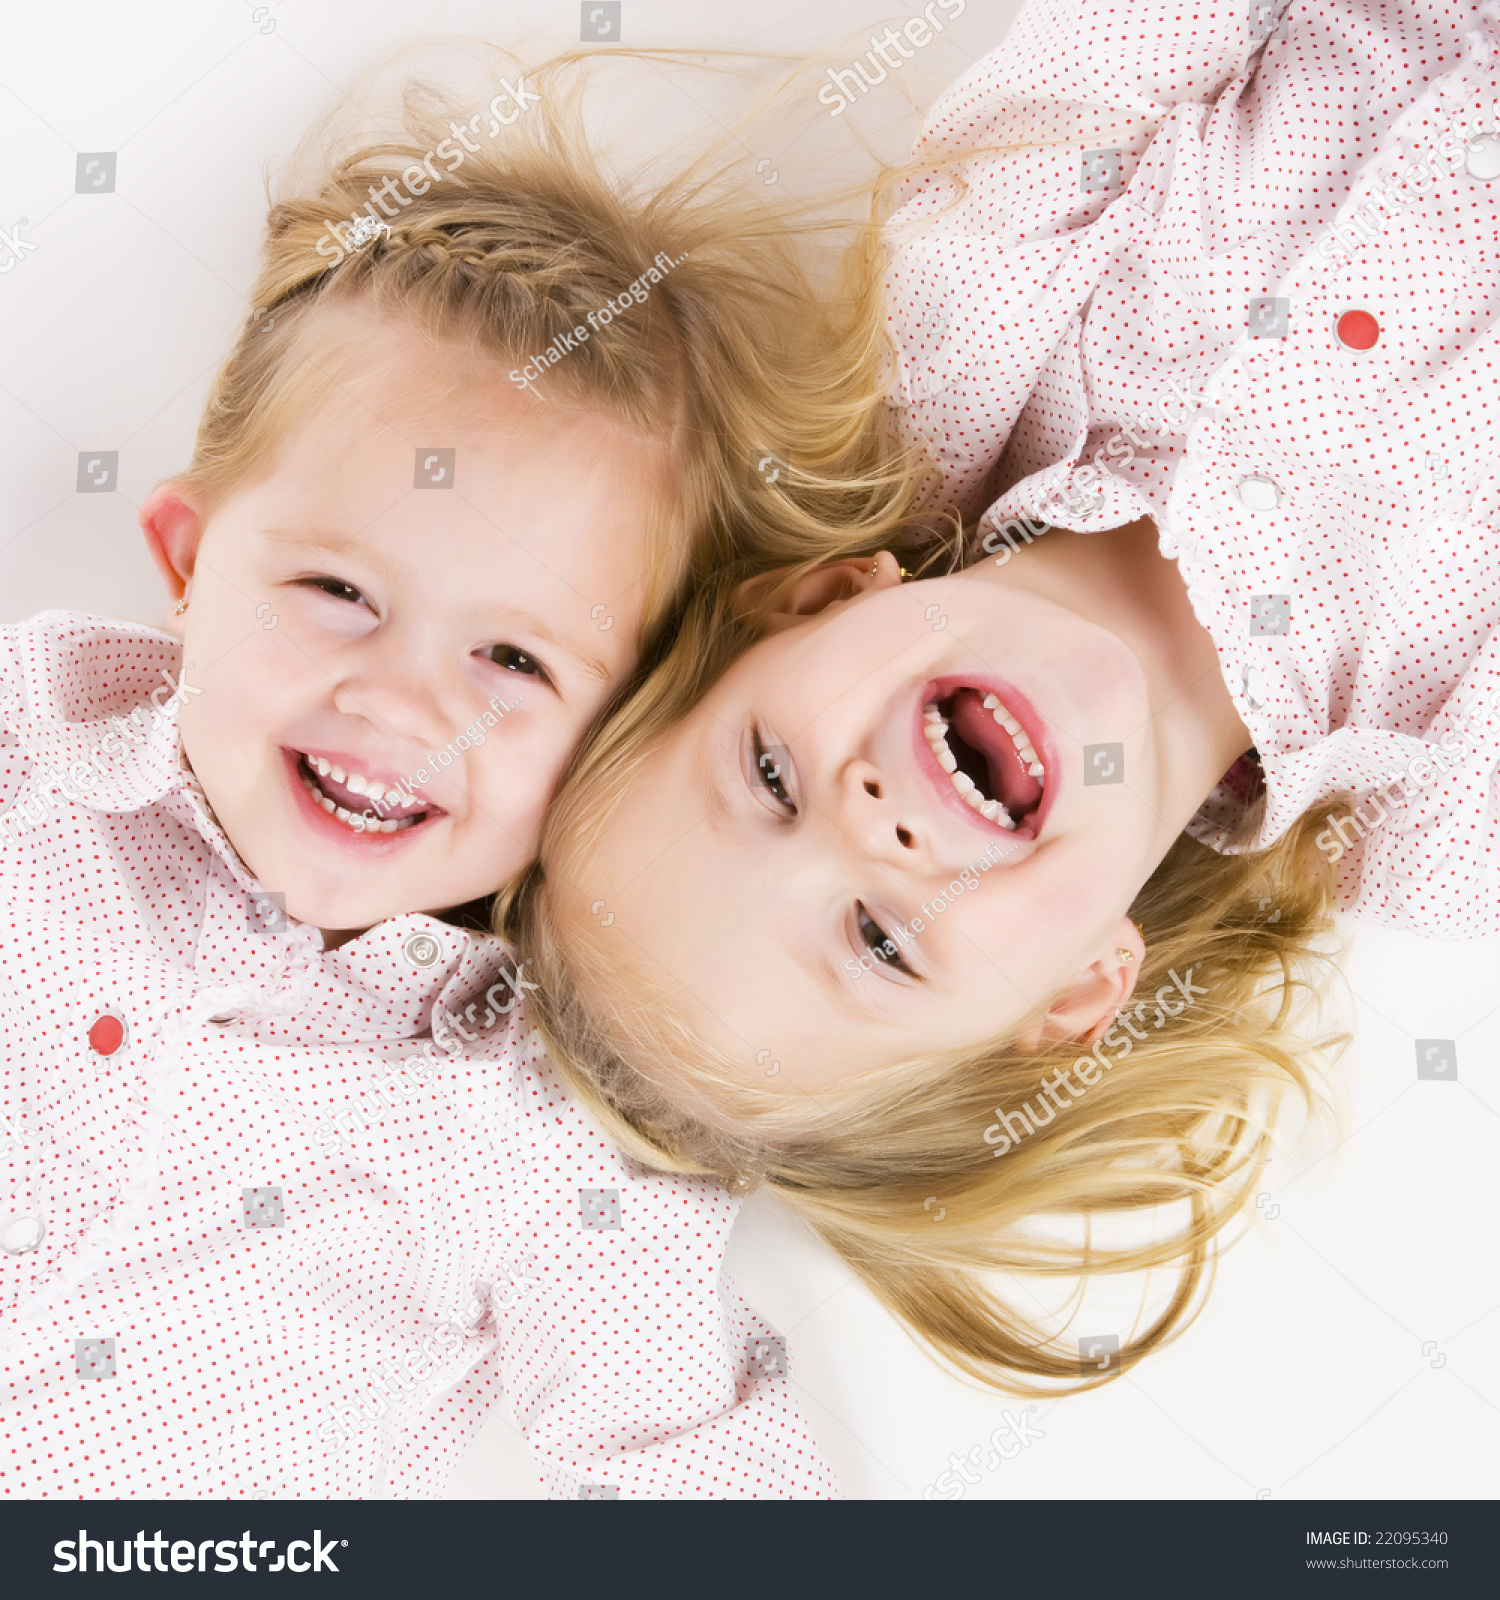 Twins having fun